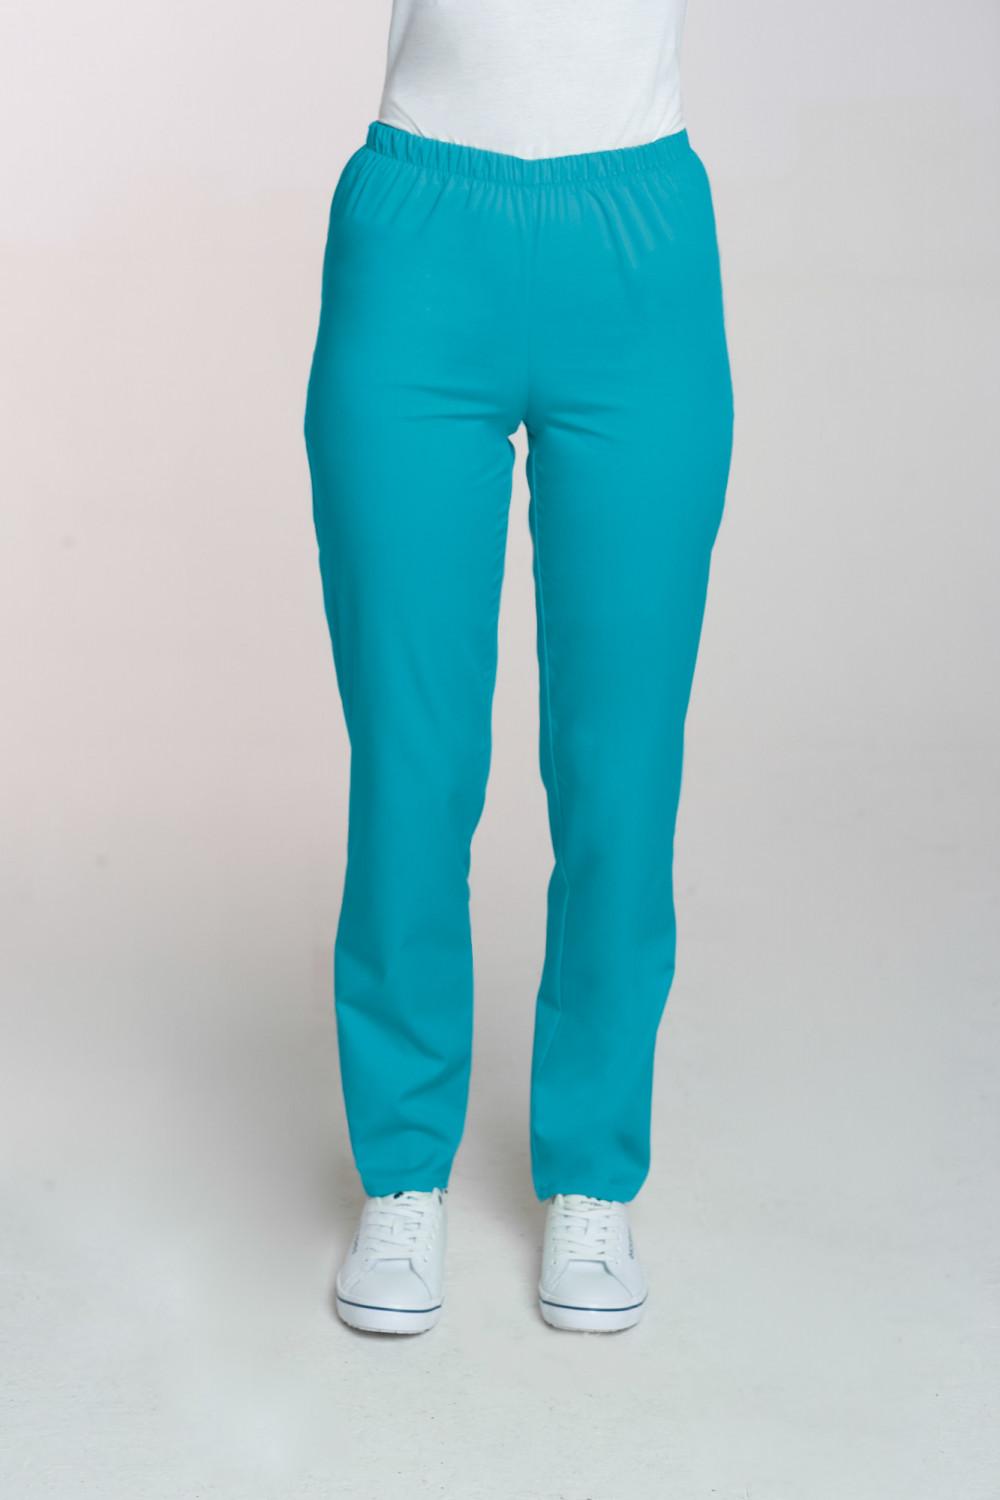 M-086 Spodnie damskie medyczne spodnie do pracy kolor turkus